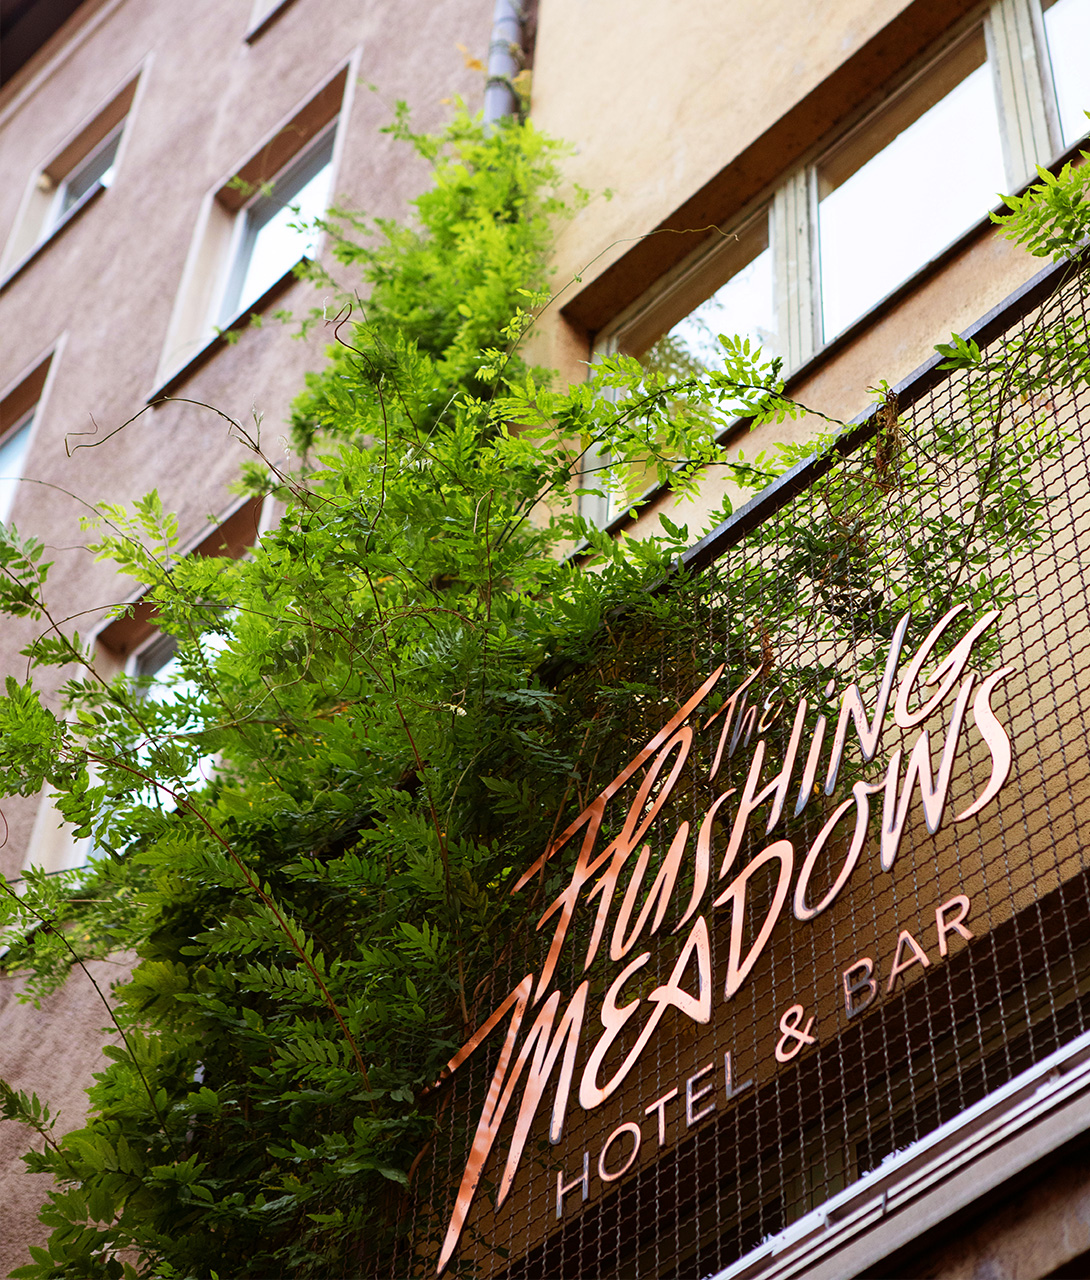 The Flushing Meadows Hotel And Bar Facade K 01 X2